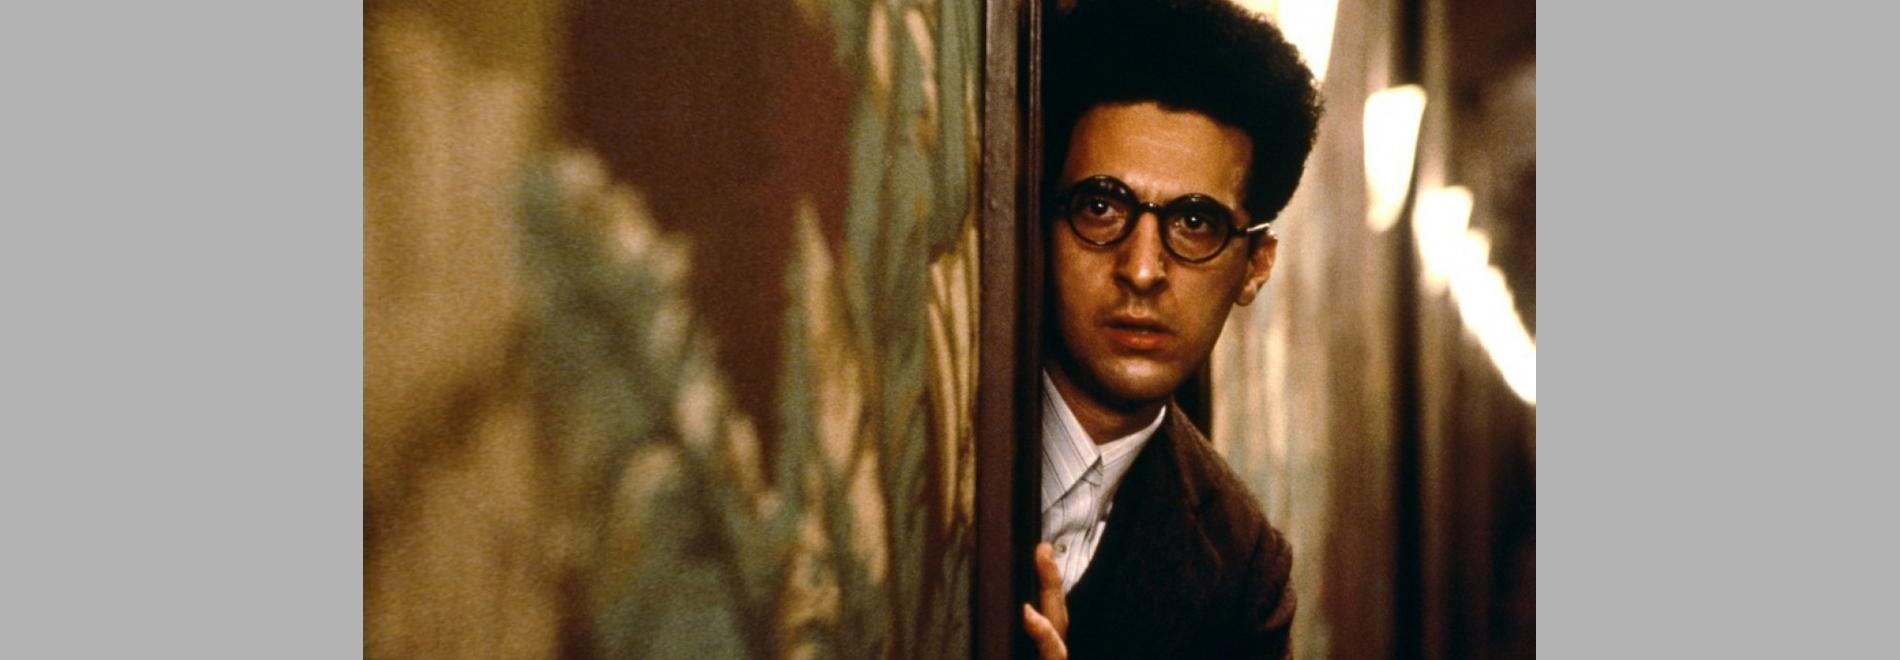 'Barton Fink' (Joel Coen, Ethan Coen, 1991)